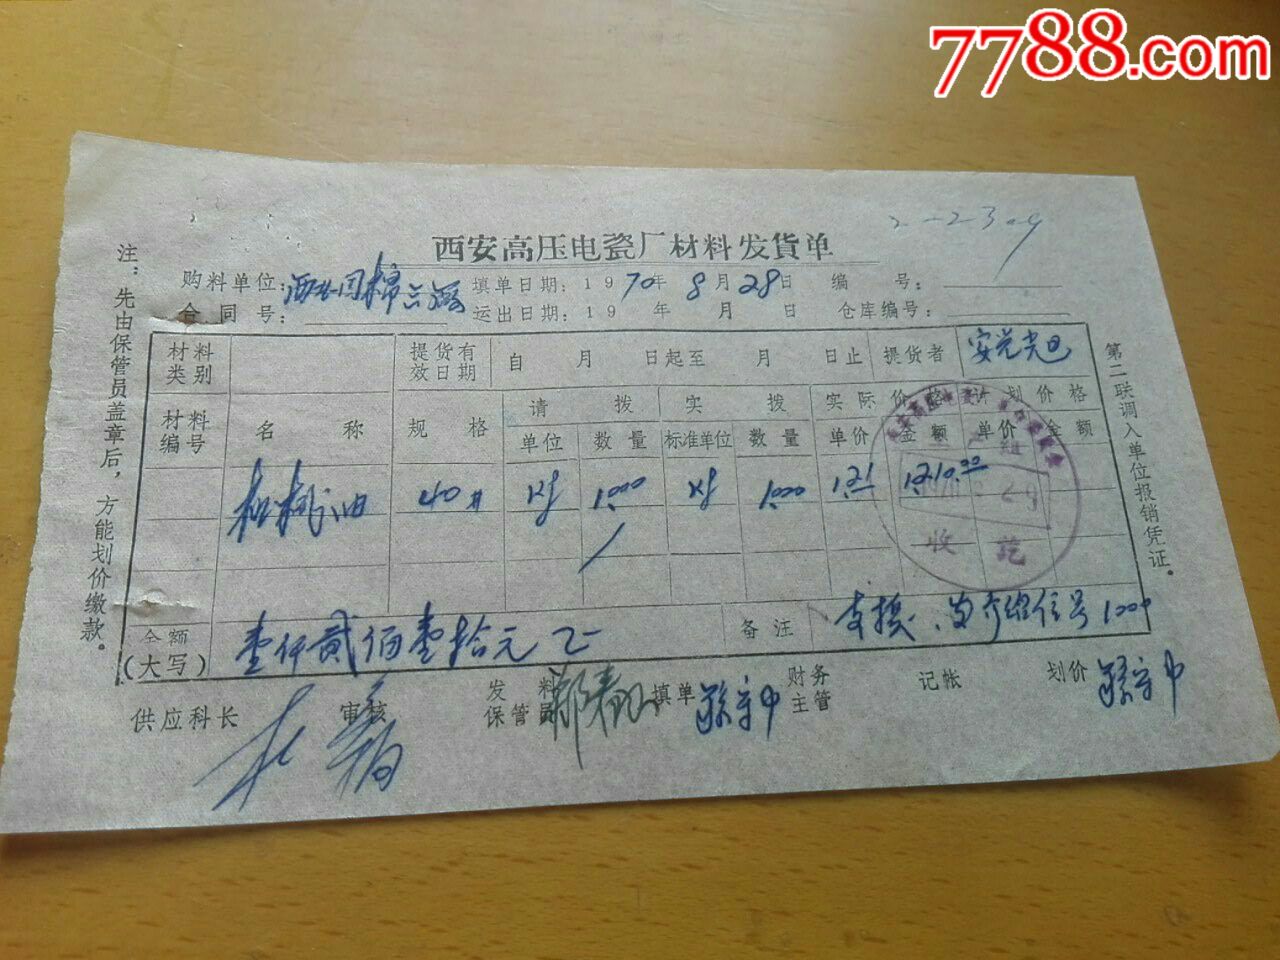 西安高压电瓷厂材料发货单19700828-发票-77